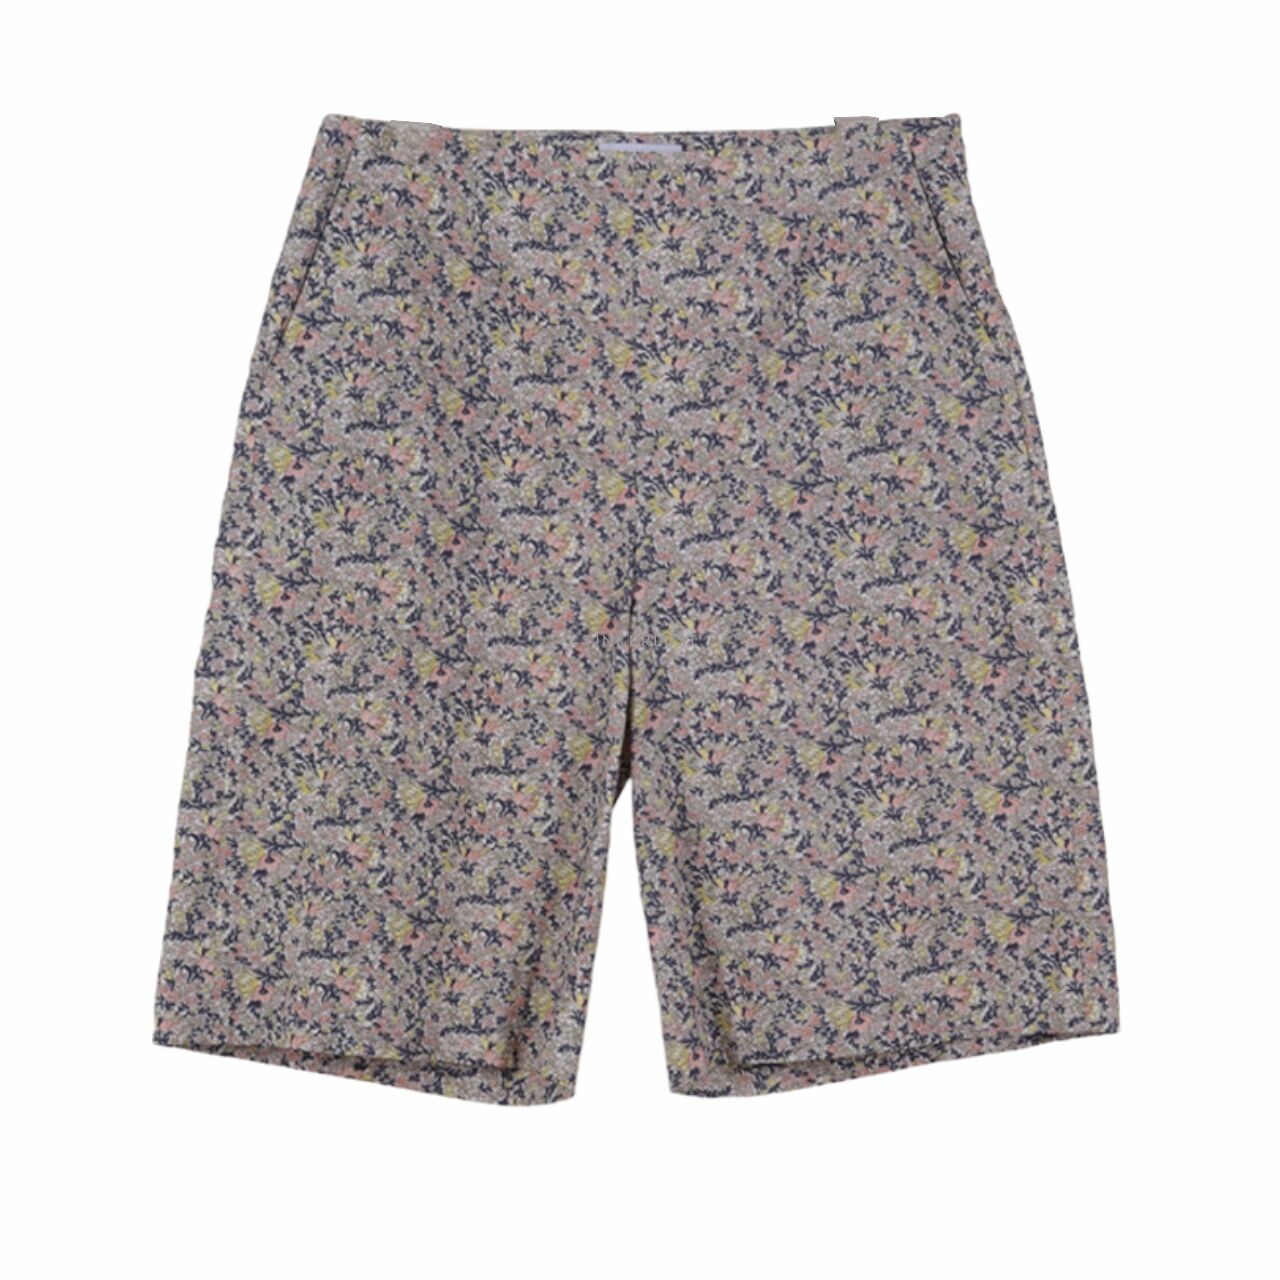 Max & Co. Multicolor Floral Short Pants